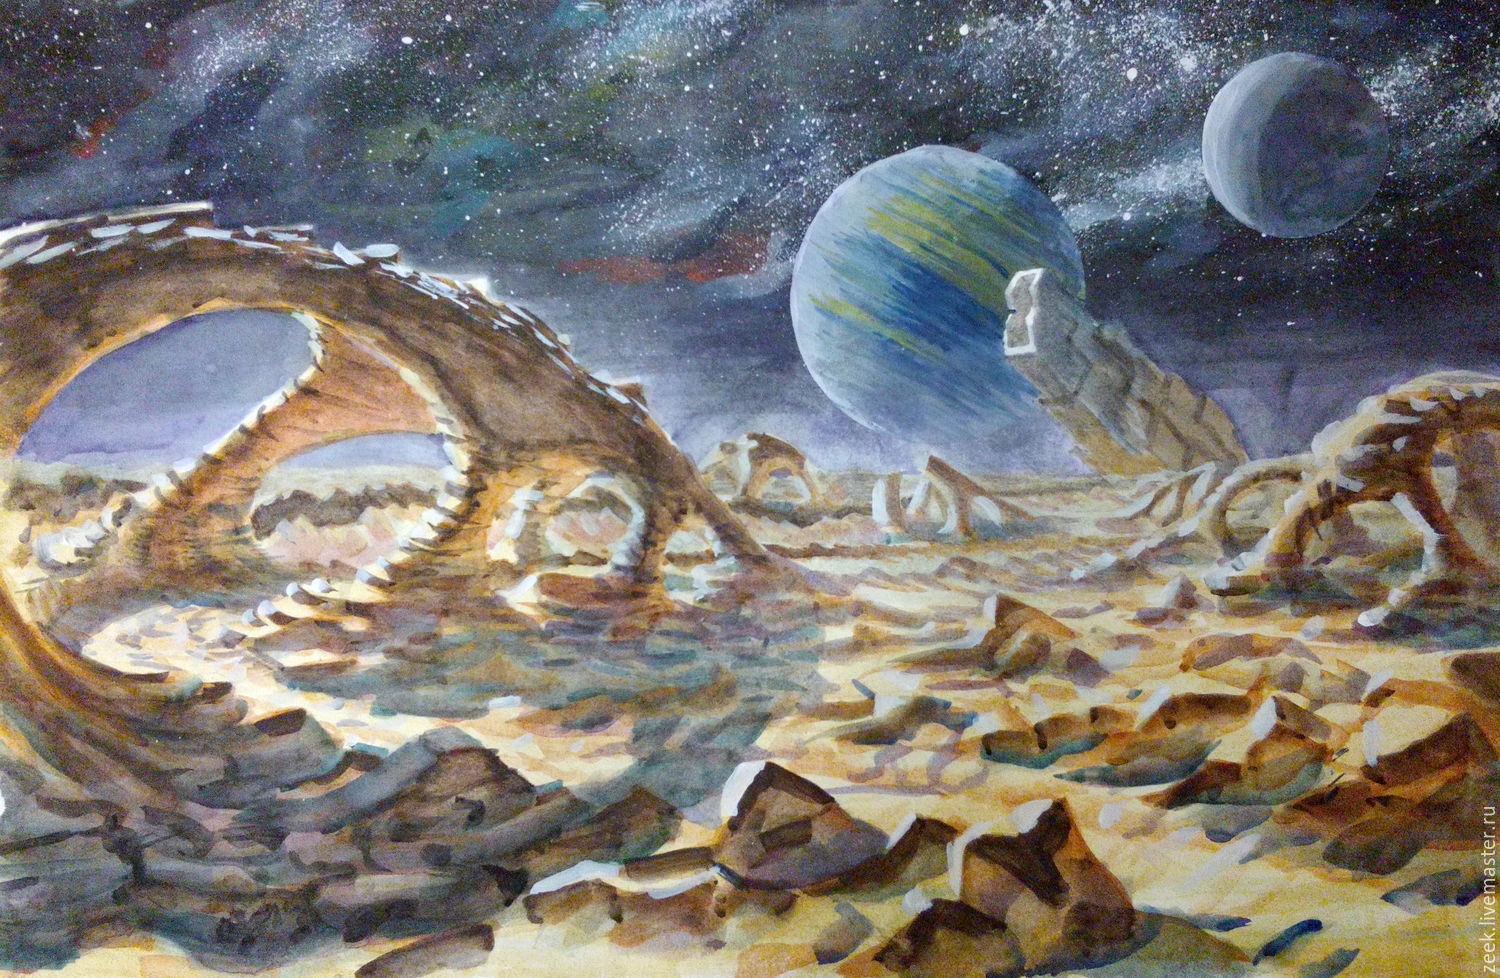 История о путешествии на другую планету. Рисунок к космическому пейзажу Чарльза Айвза. "Космический пейзаж" Чарльза Айвза. Аскаска.